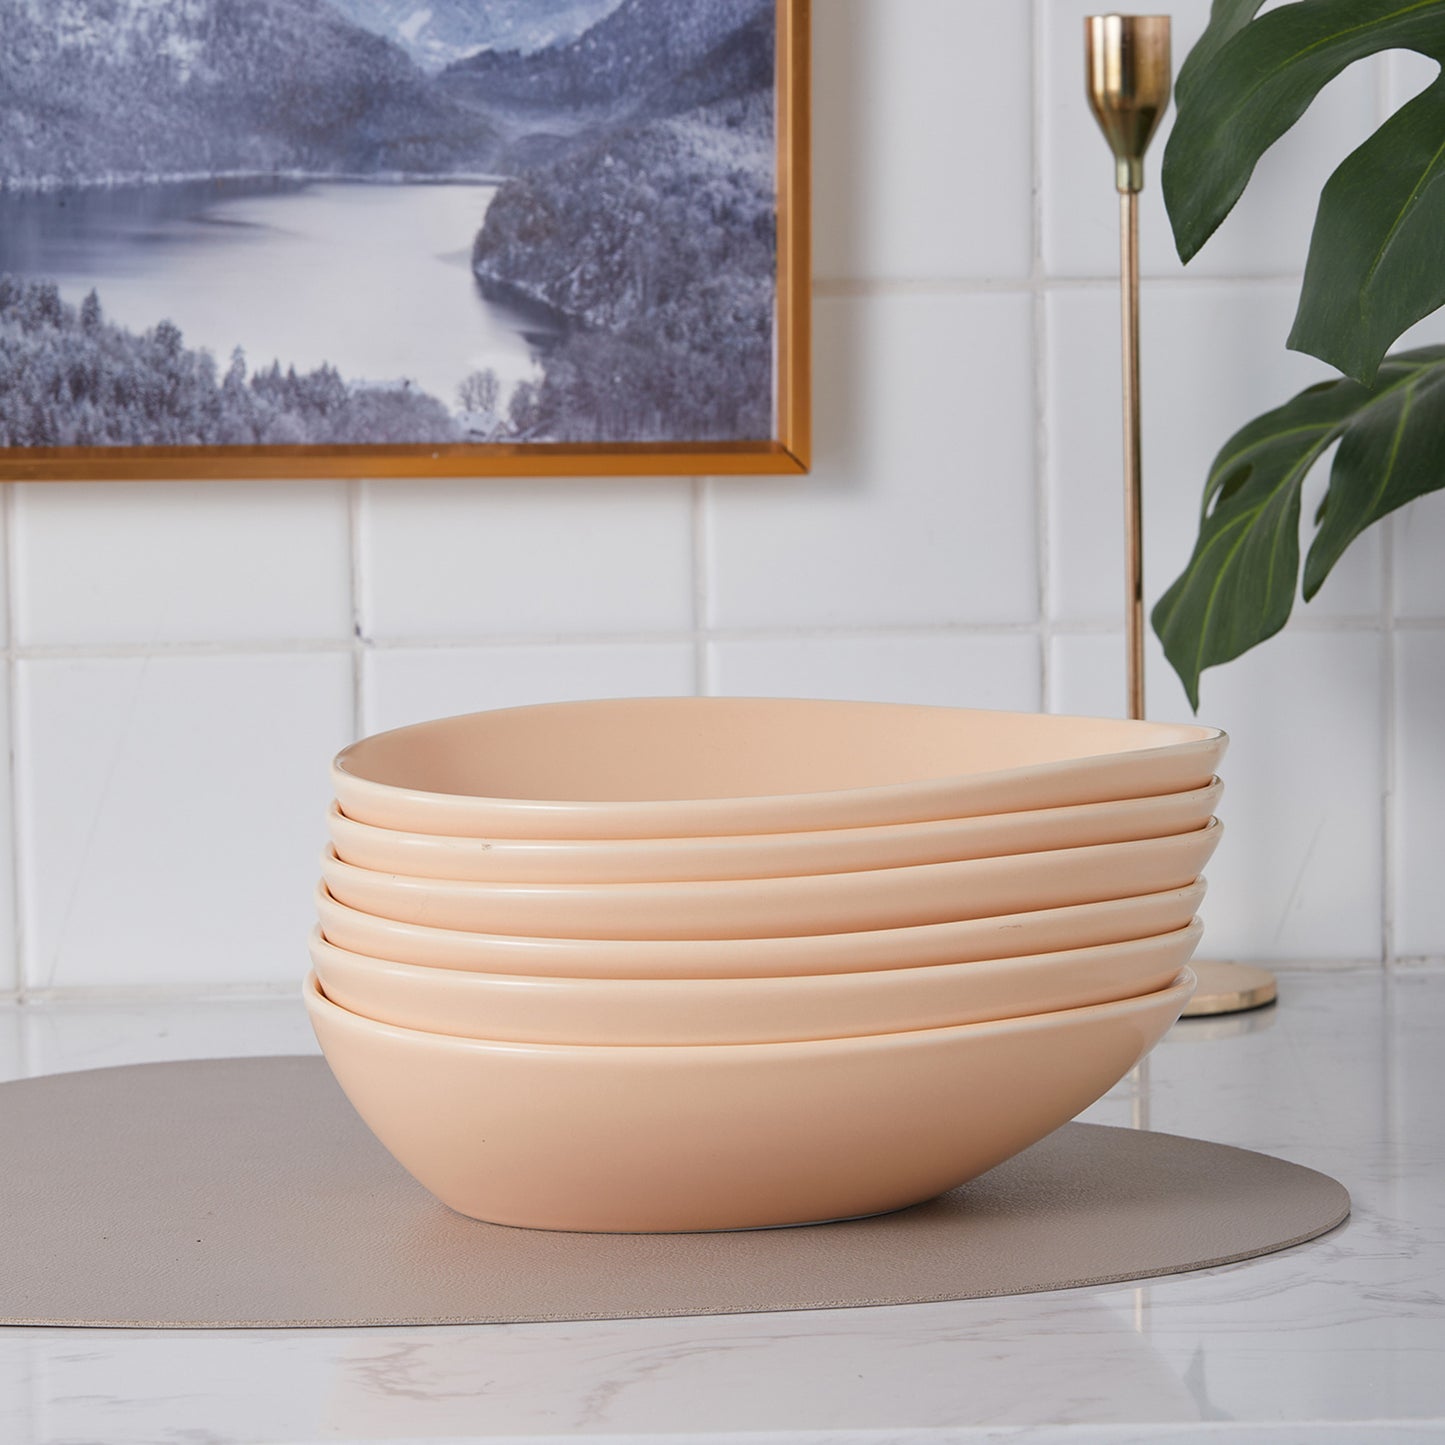 Delilah Porcelain Pasta Bowl Set - Set of 6